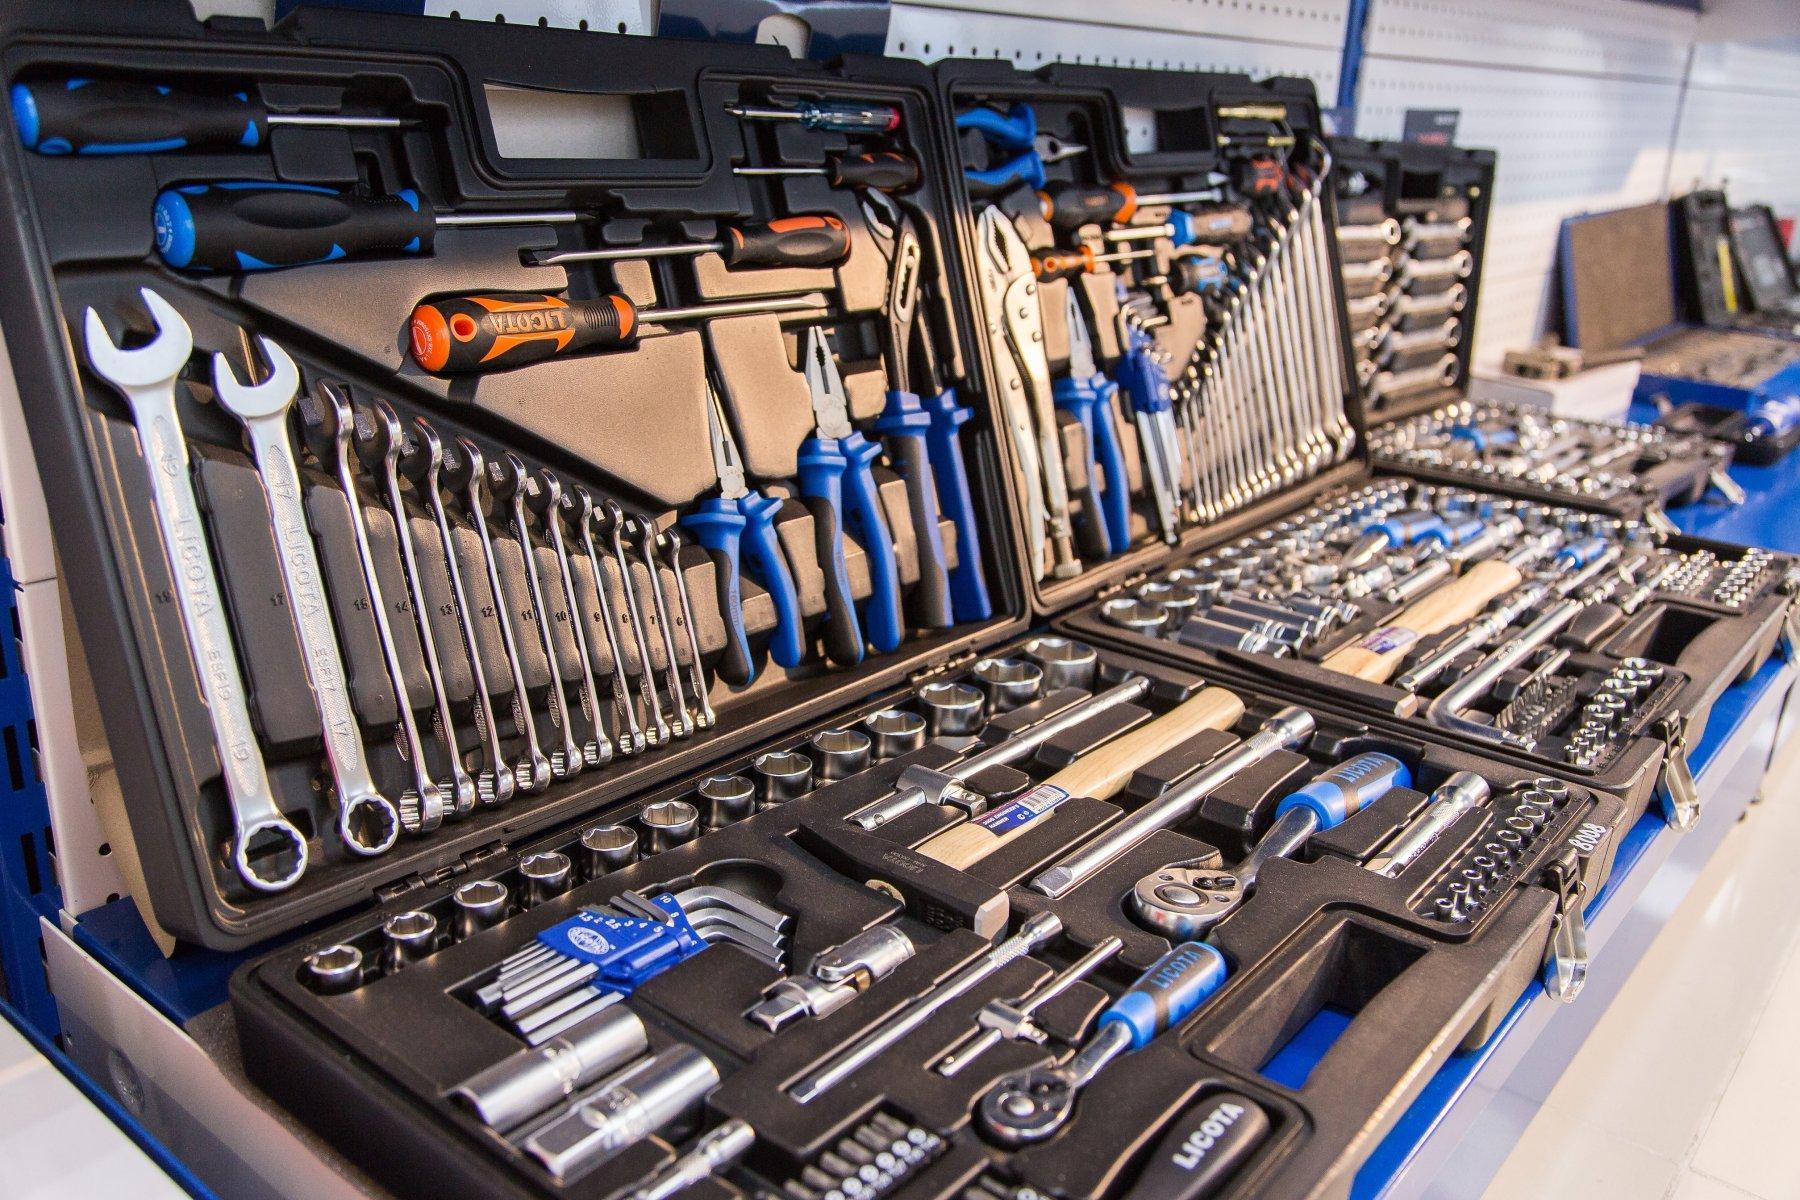 Industrial tools. Склад инструментов. Много инструментов. Производственные инструменты. Индустриальный инструмент.